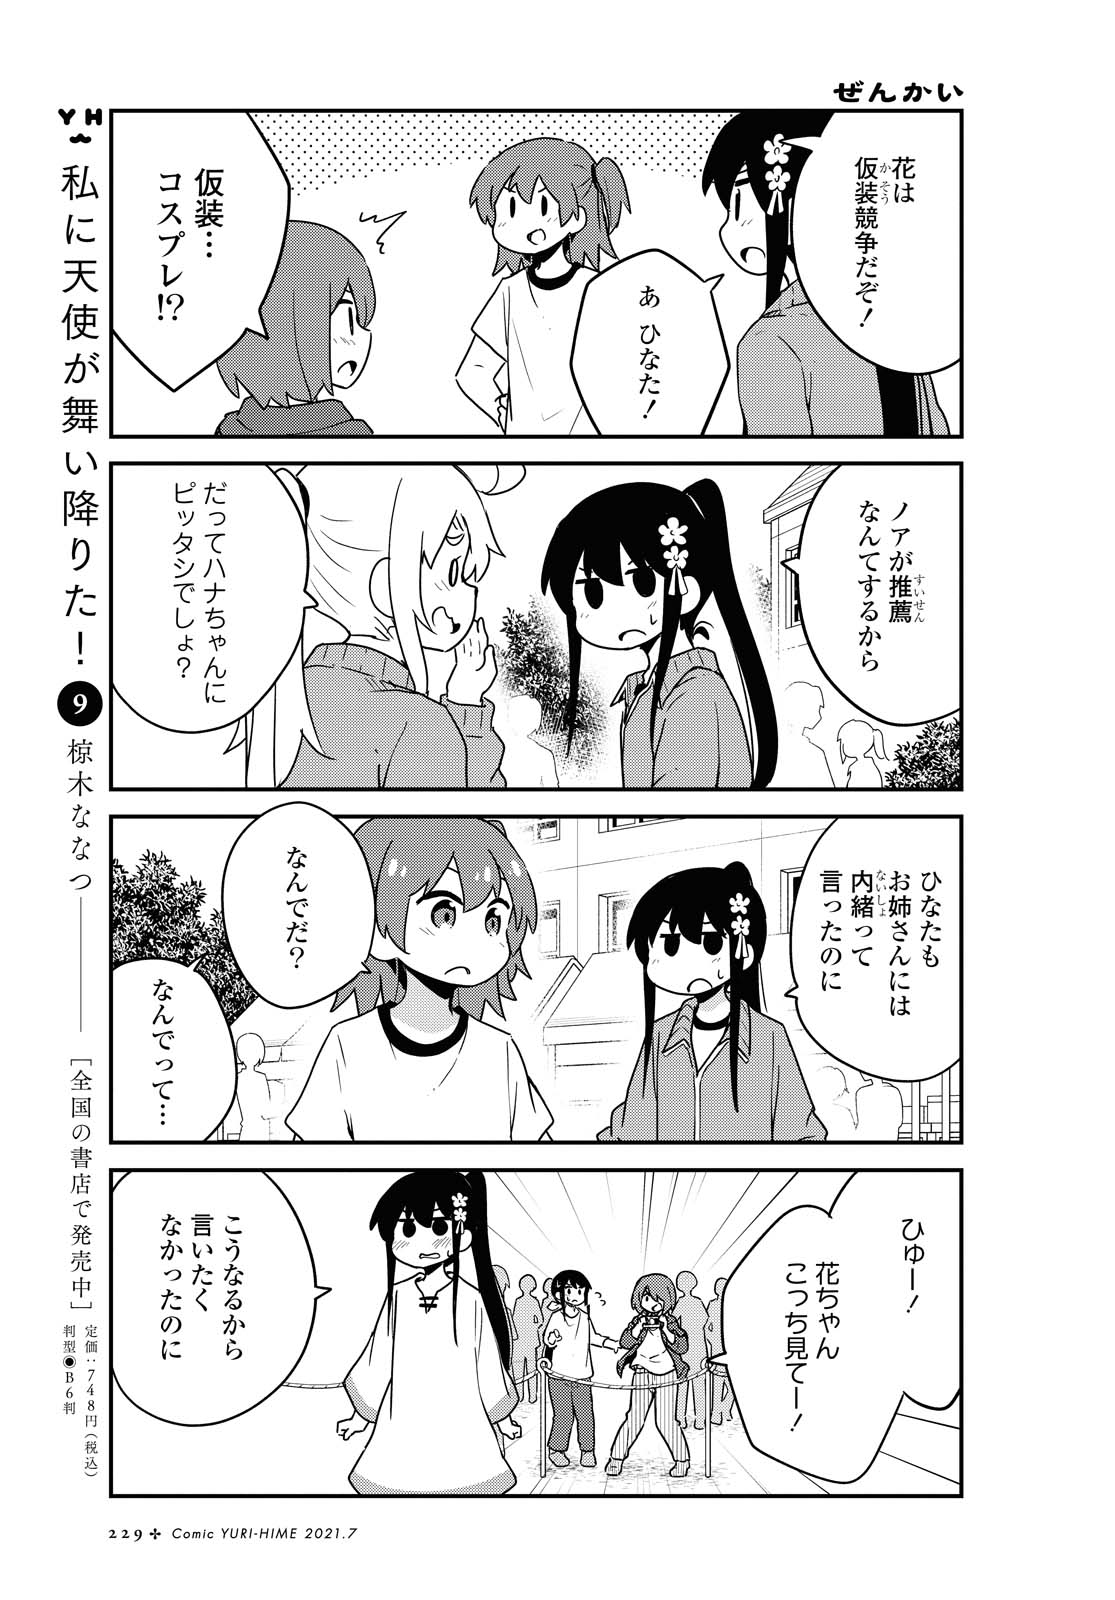 Watashi ni Tenshi ga Maiorita! - Chapter 83 - Page 5